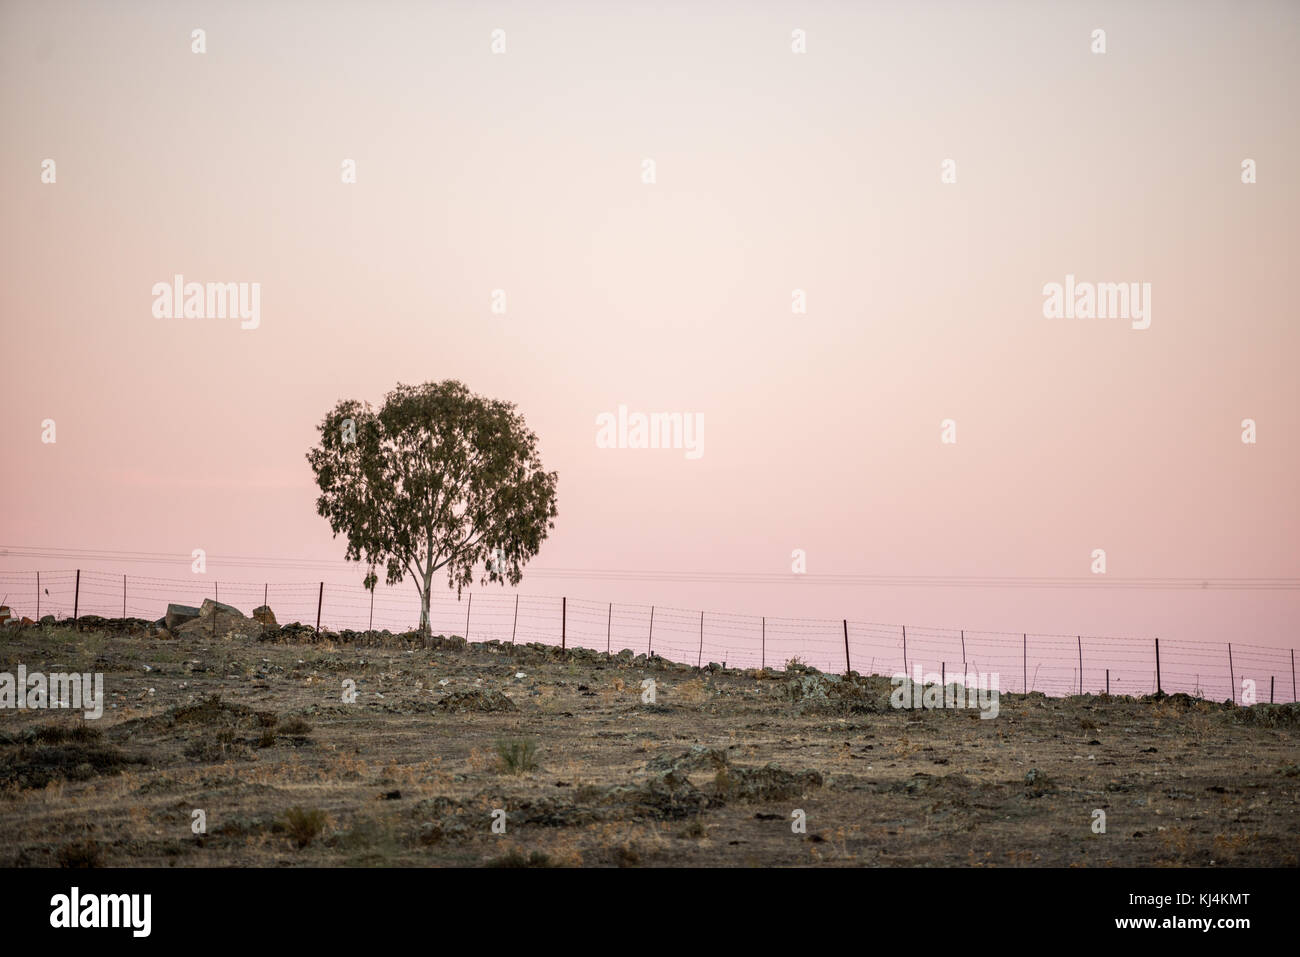 Un arbre solitaire au sommet d'une colline dans la steppe sur un fond coucher de soleil. Cáceres, Extremadura, Espagne Banque D'Images